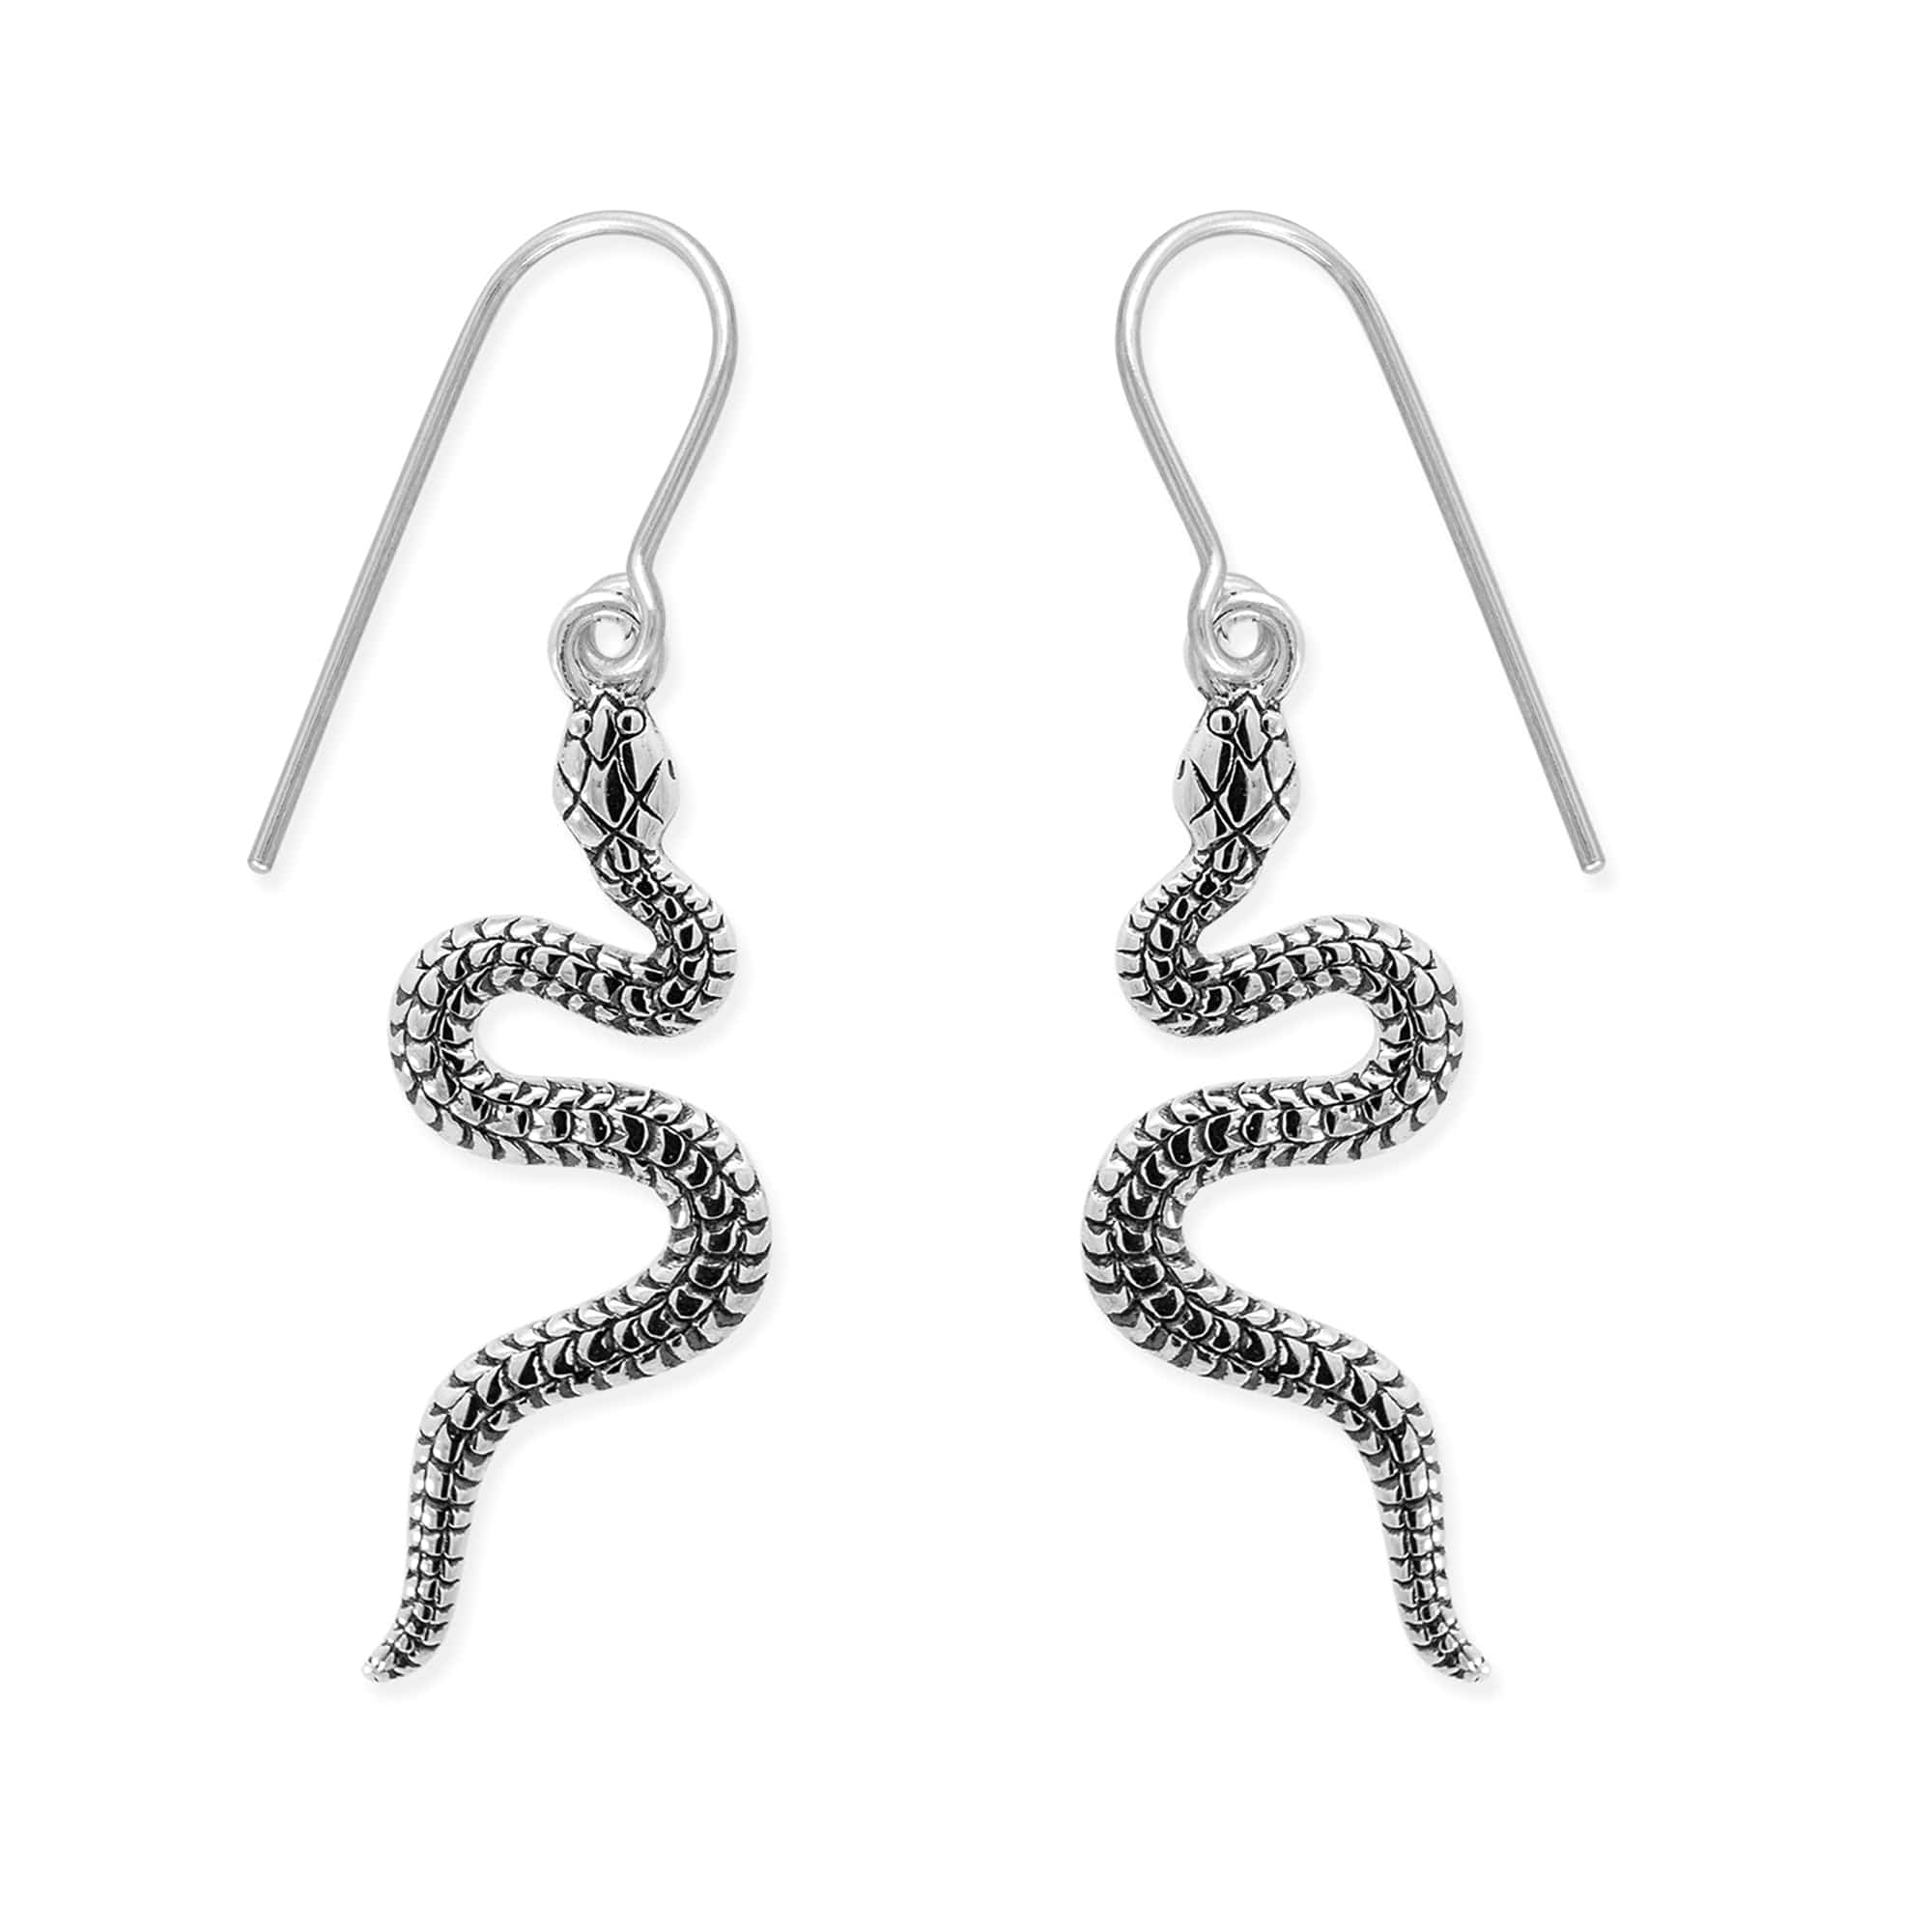 Boma Jewelry Earrings Slytherin Snake Dangle Earrings